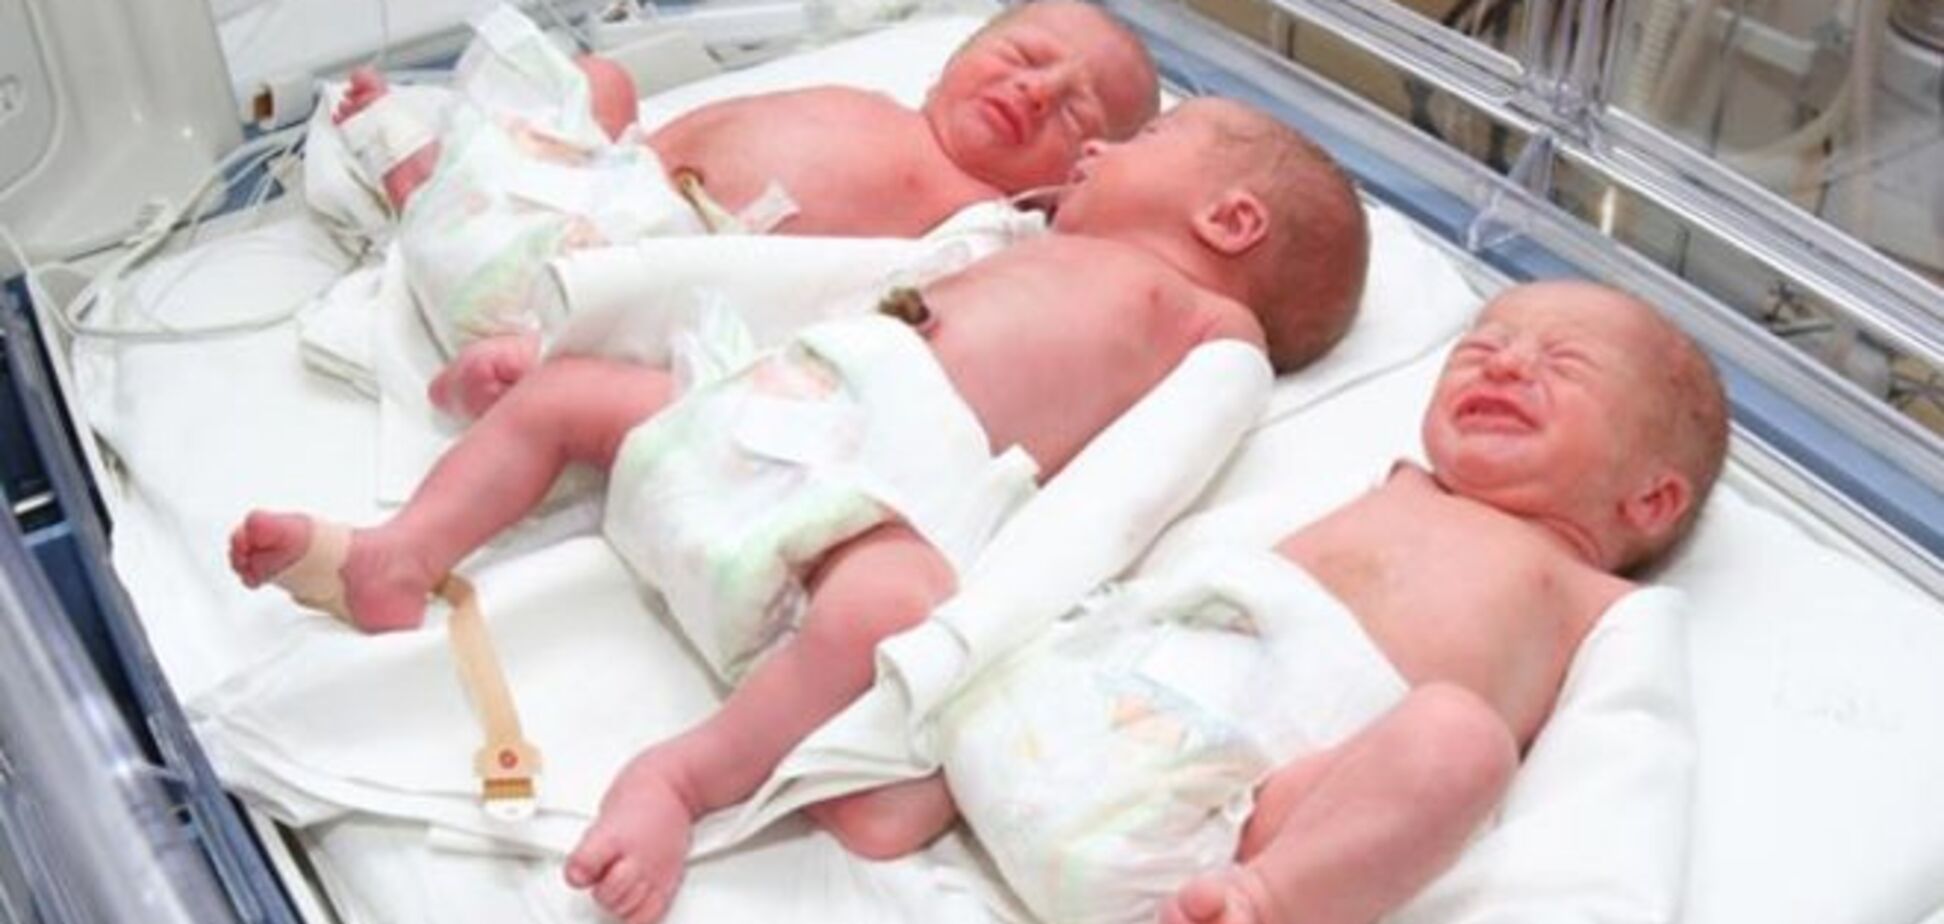 Допомога при народженні першої дитини збільшили на 10 тисяч гривень